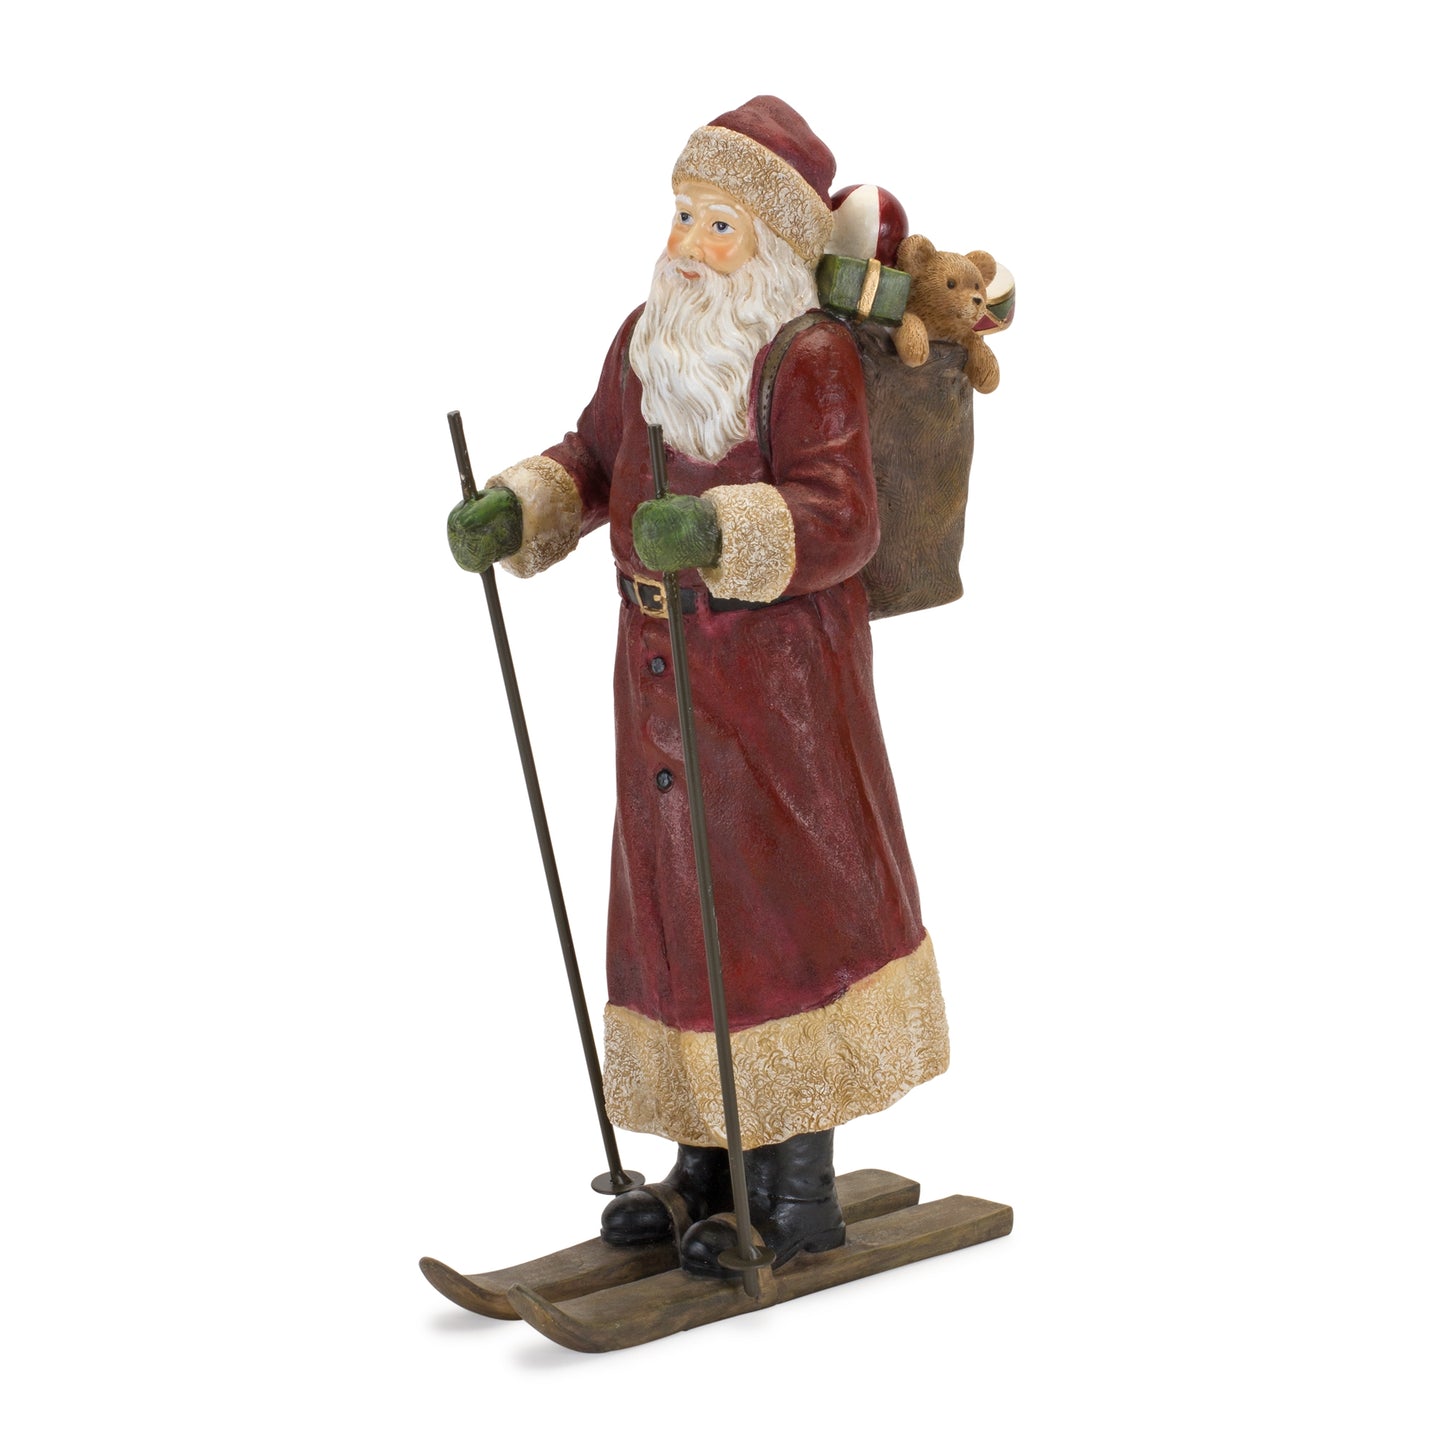 Santa on Skis Figurine 13.25"H